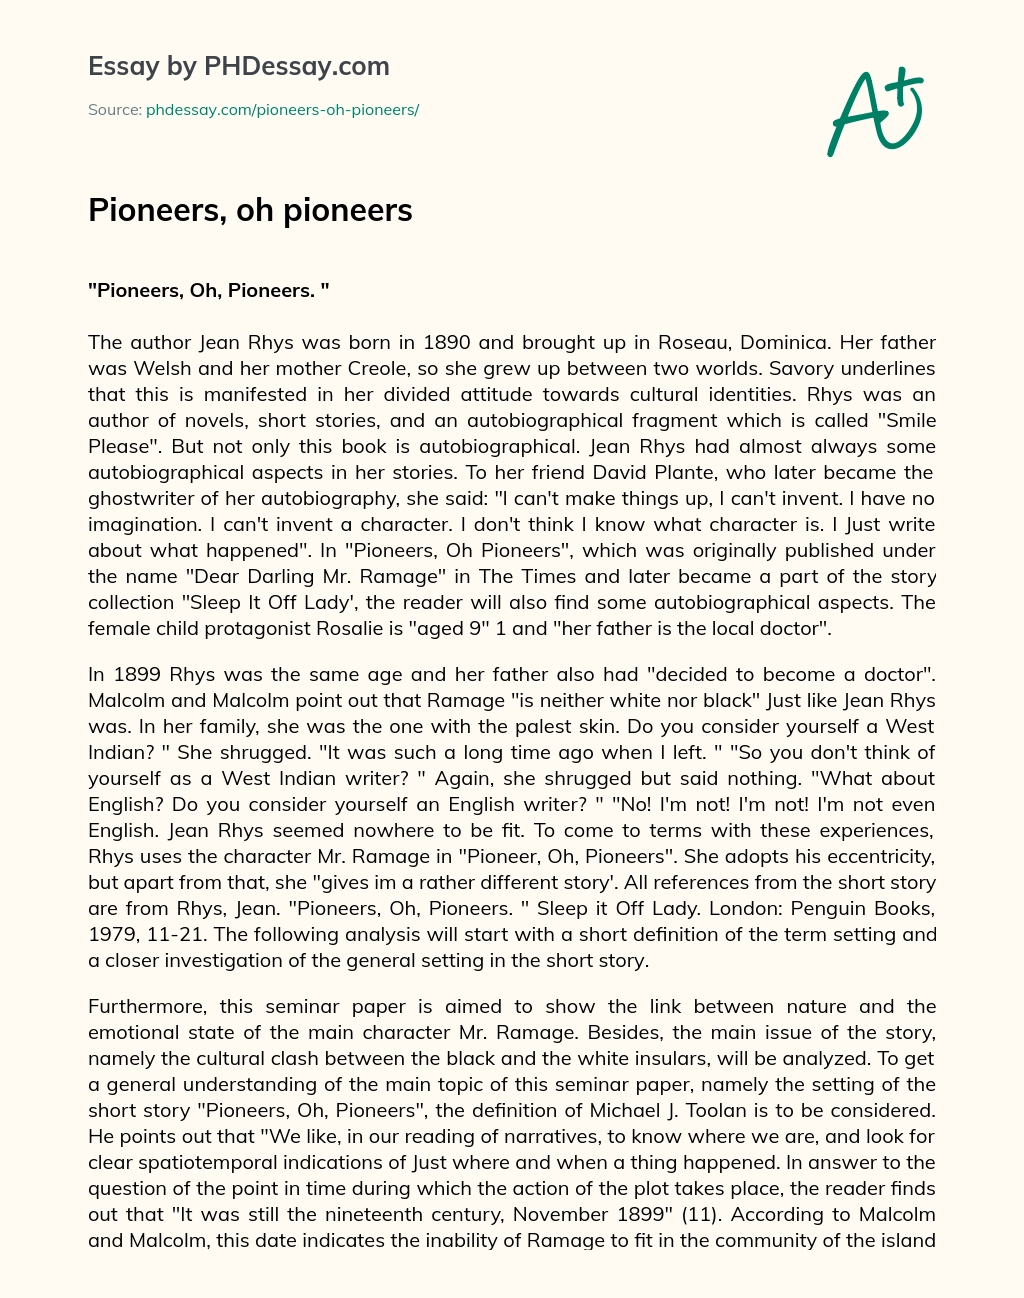 Pioneers, oh pioneers essay